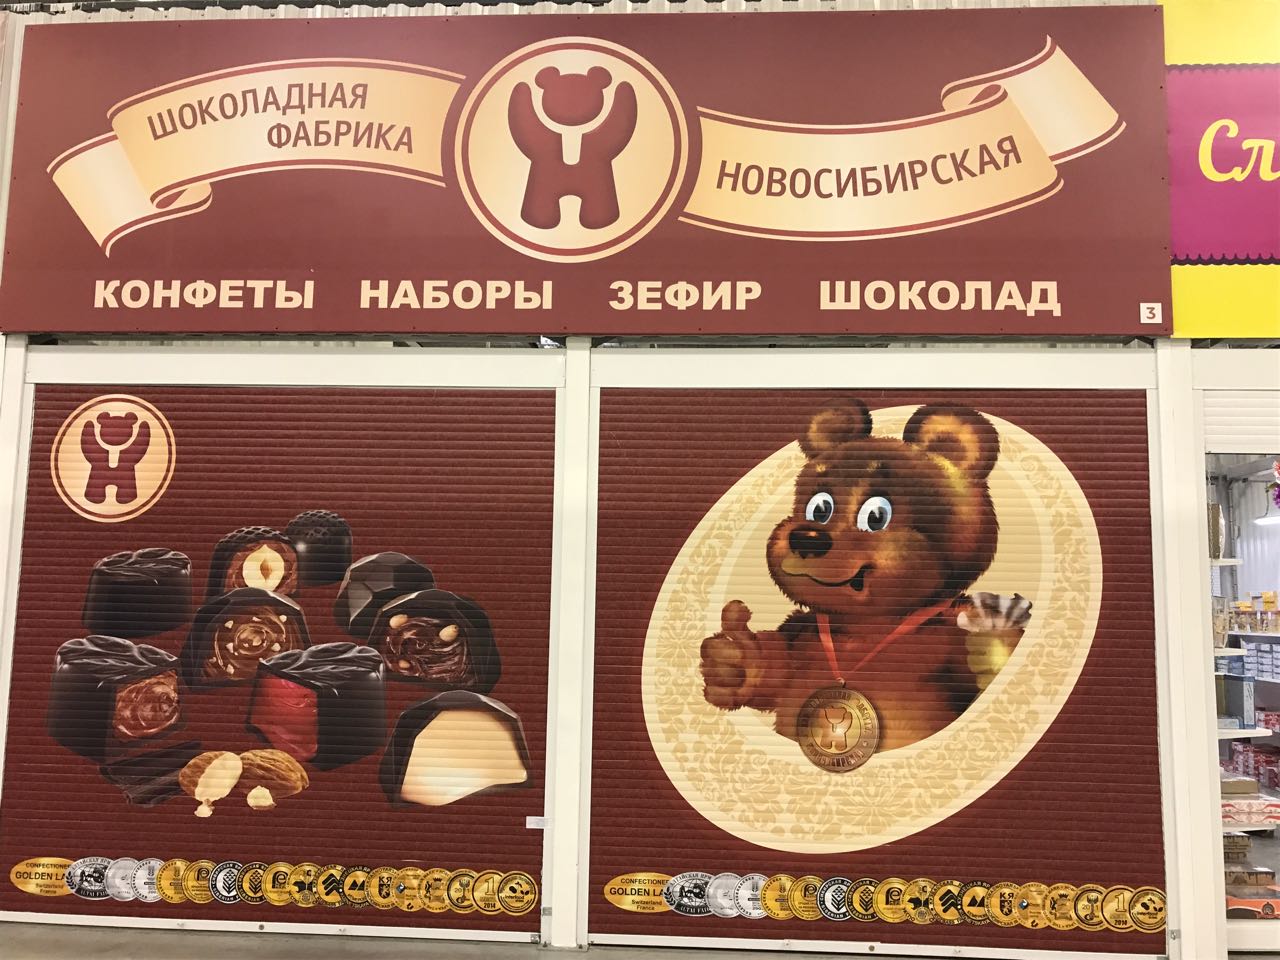 Купить шоколад в новосибирске. Новосибирская шоколадная фабрика конфеты Новосибирские. Конфеты Новосибирской шоколадной фабрики в Новосибирске. Новосибирская шоколадная фабрика мишка. ЗАО шоколадная фабрика Новосибирская.